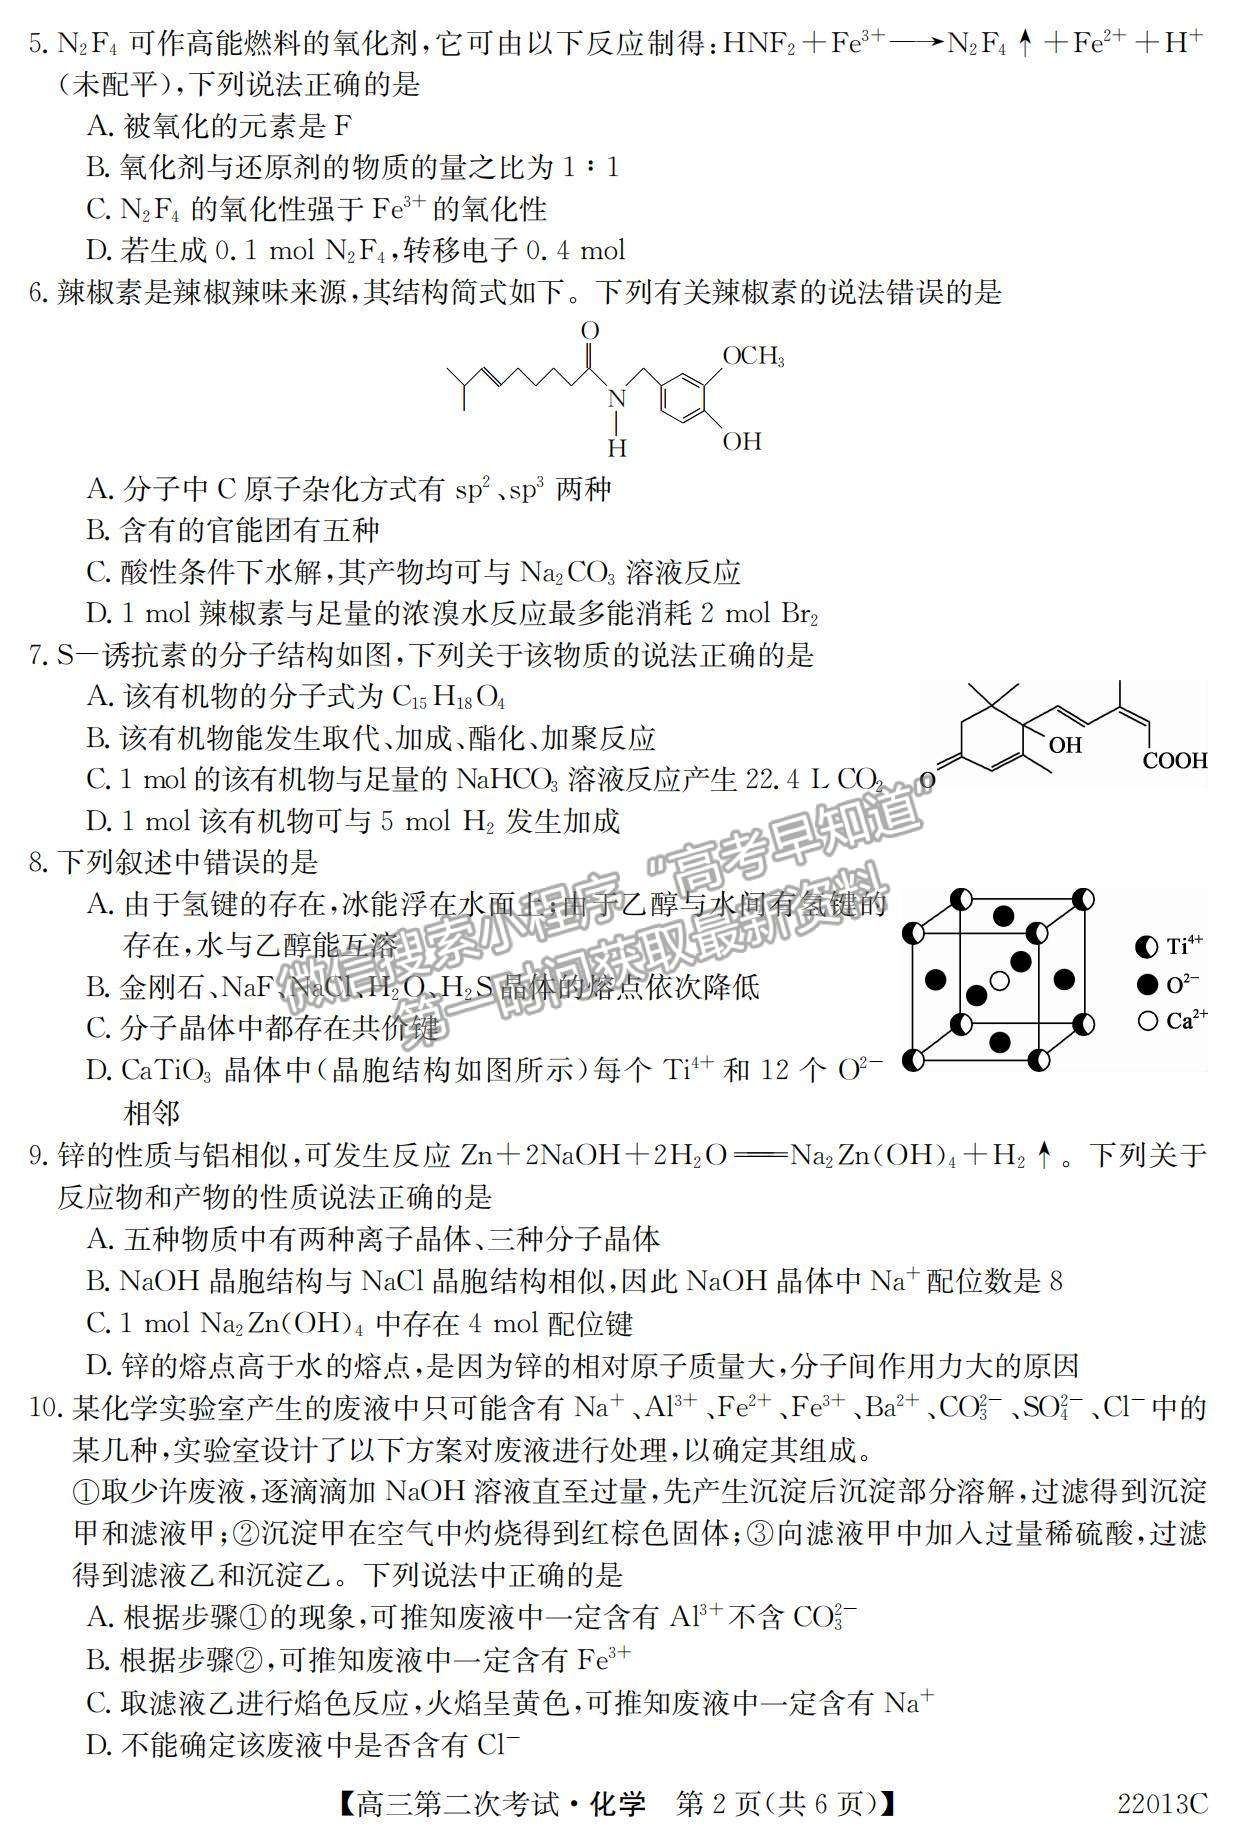 2022辽宁省高三第一学期第二次考试（22013c）化学试题及参考答案